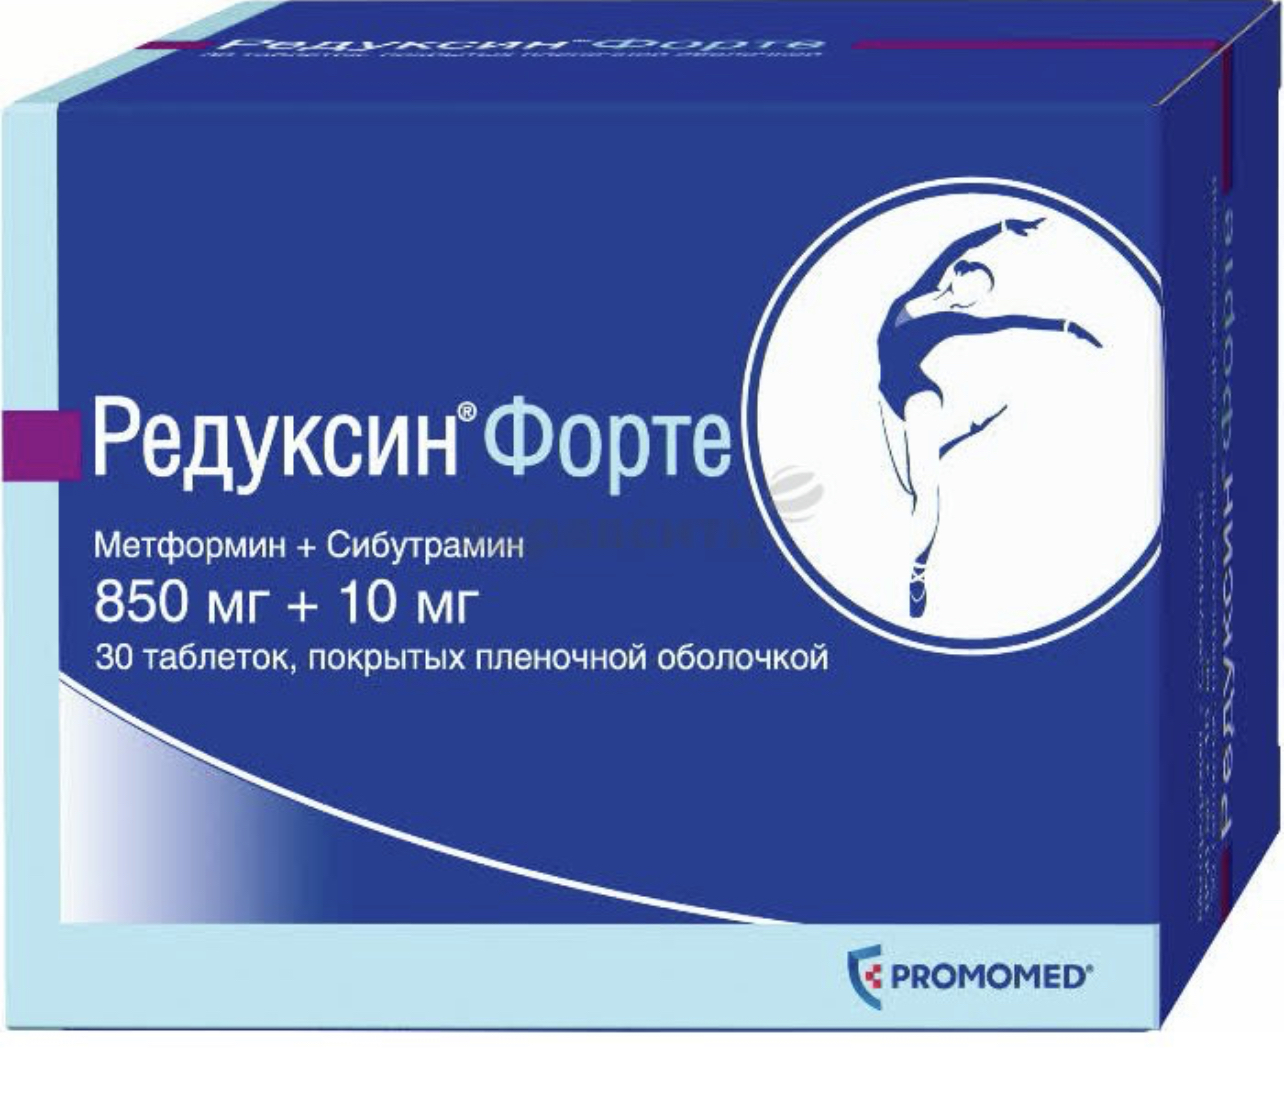 Лекарственный препарат Promo-Med "Редуксин форте" 10 мг фото